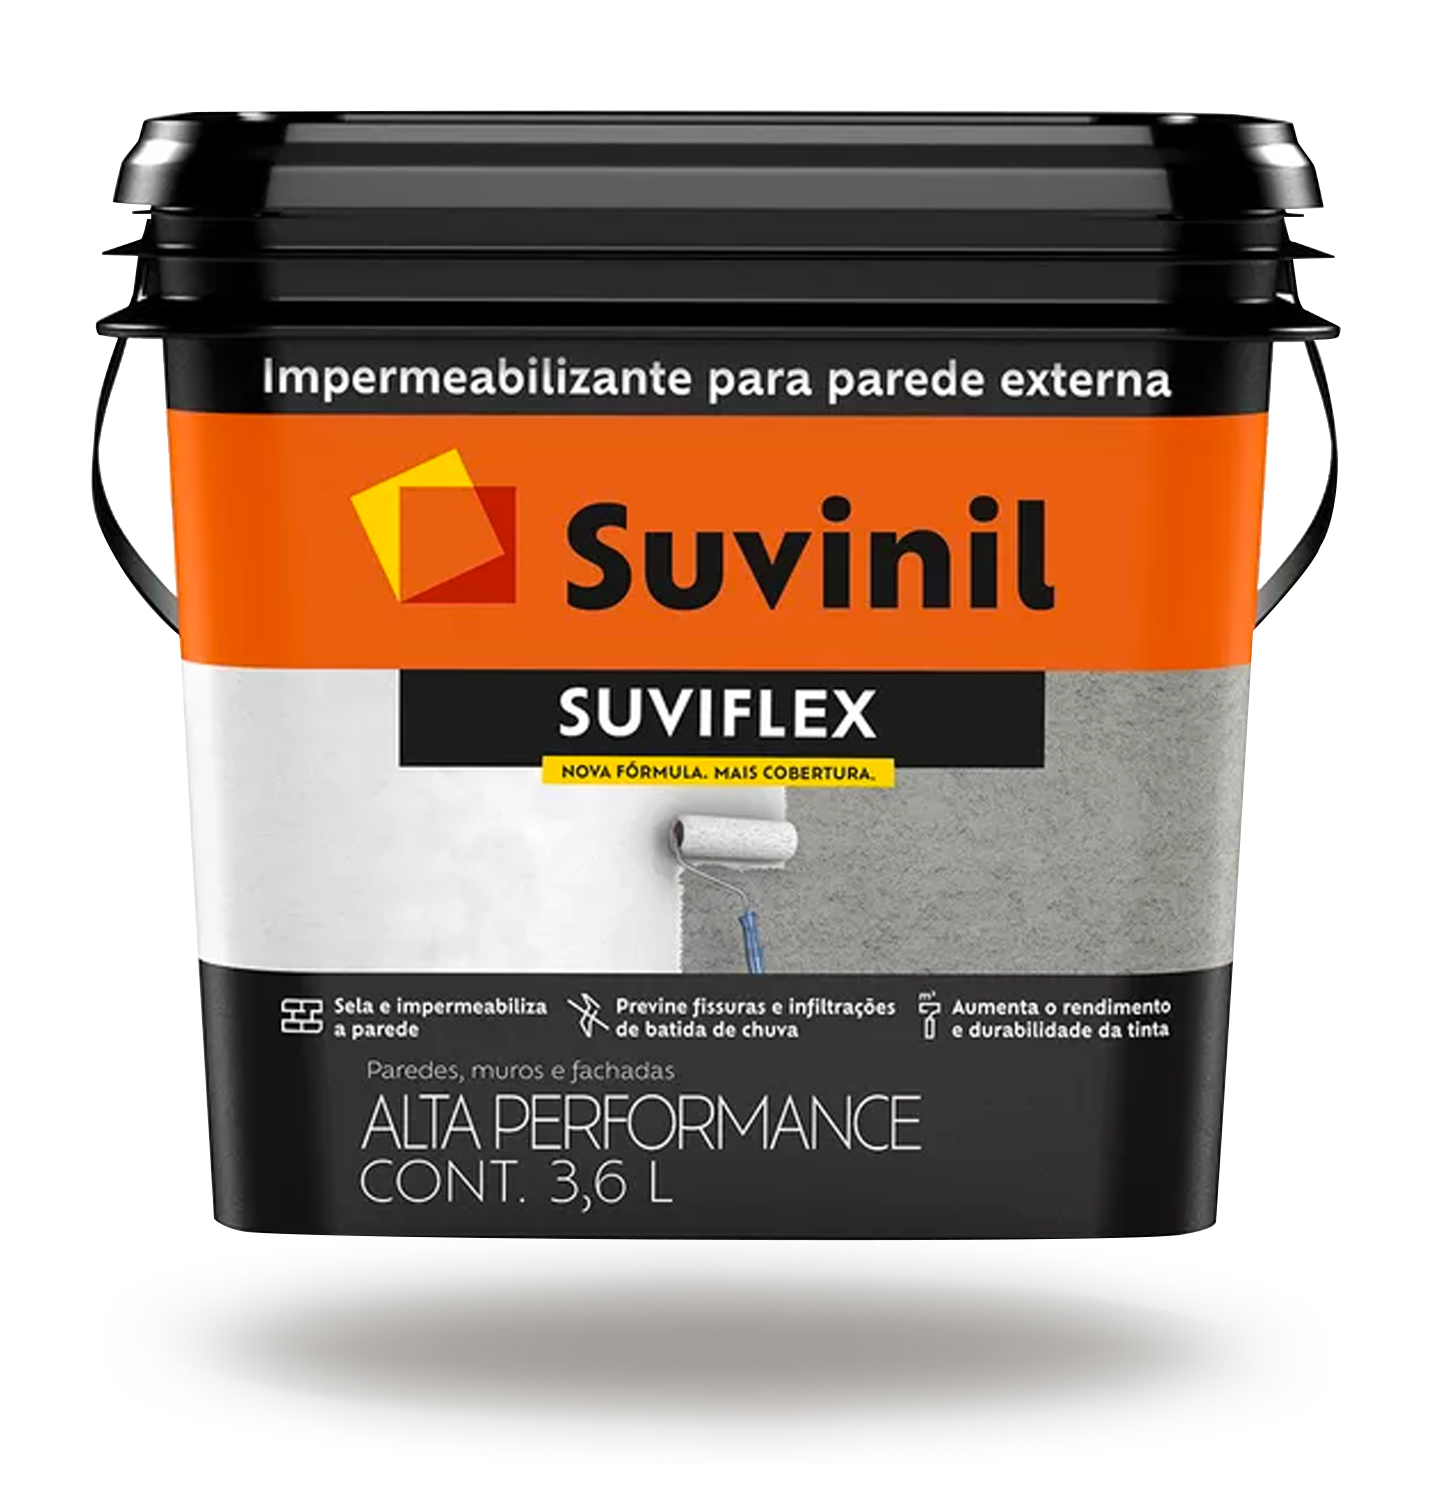 Suvinil - Suviflex Impermeabilizante